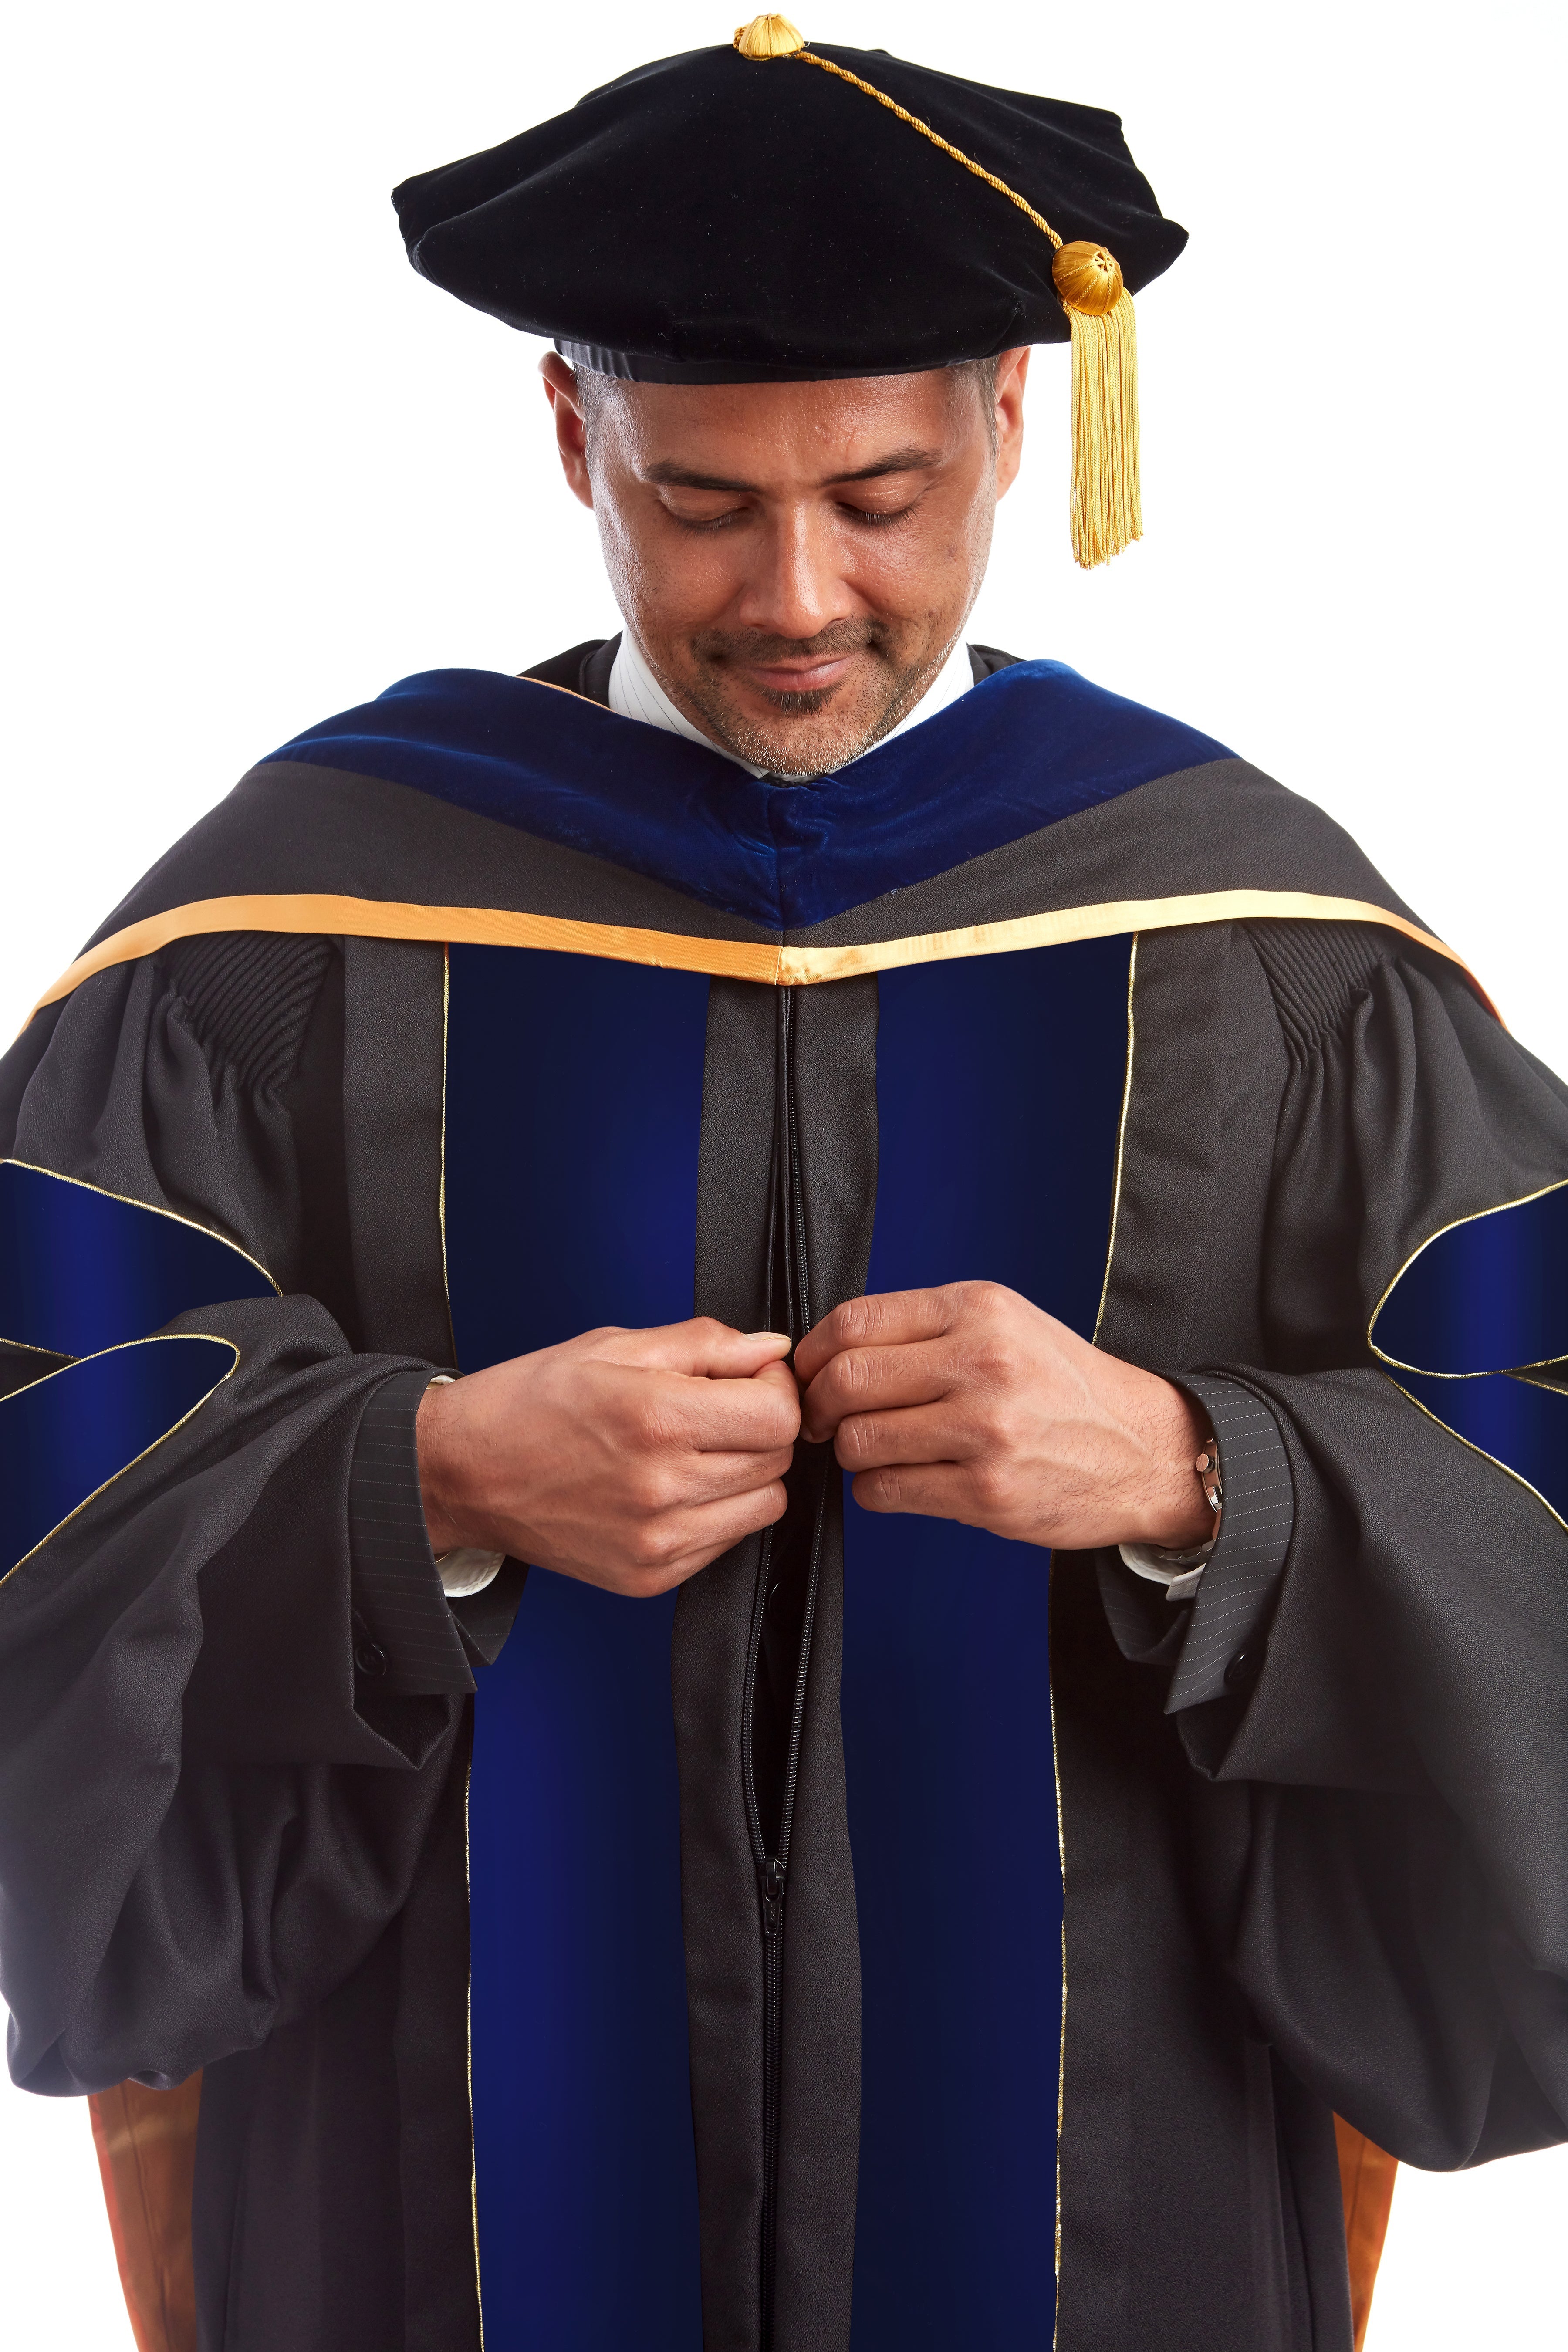 Hire: University of Cape Town (UCT) Graduation Set – Graduation Home